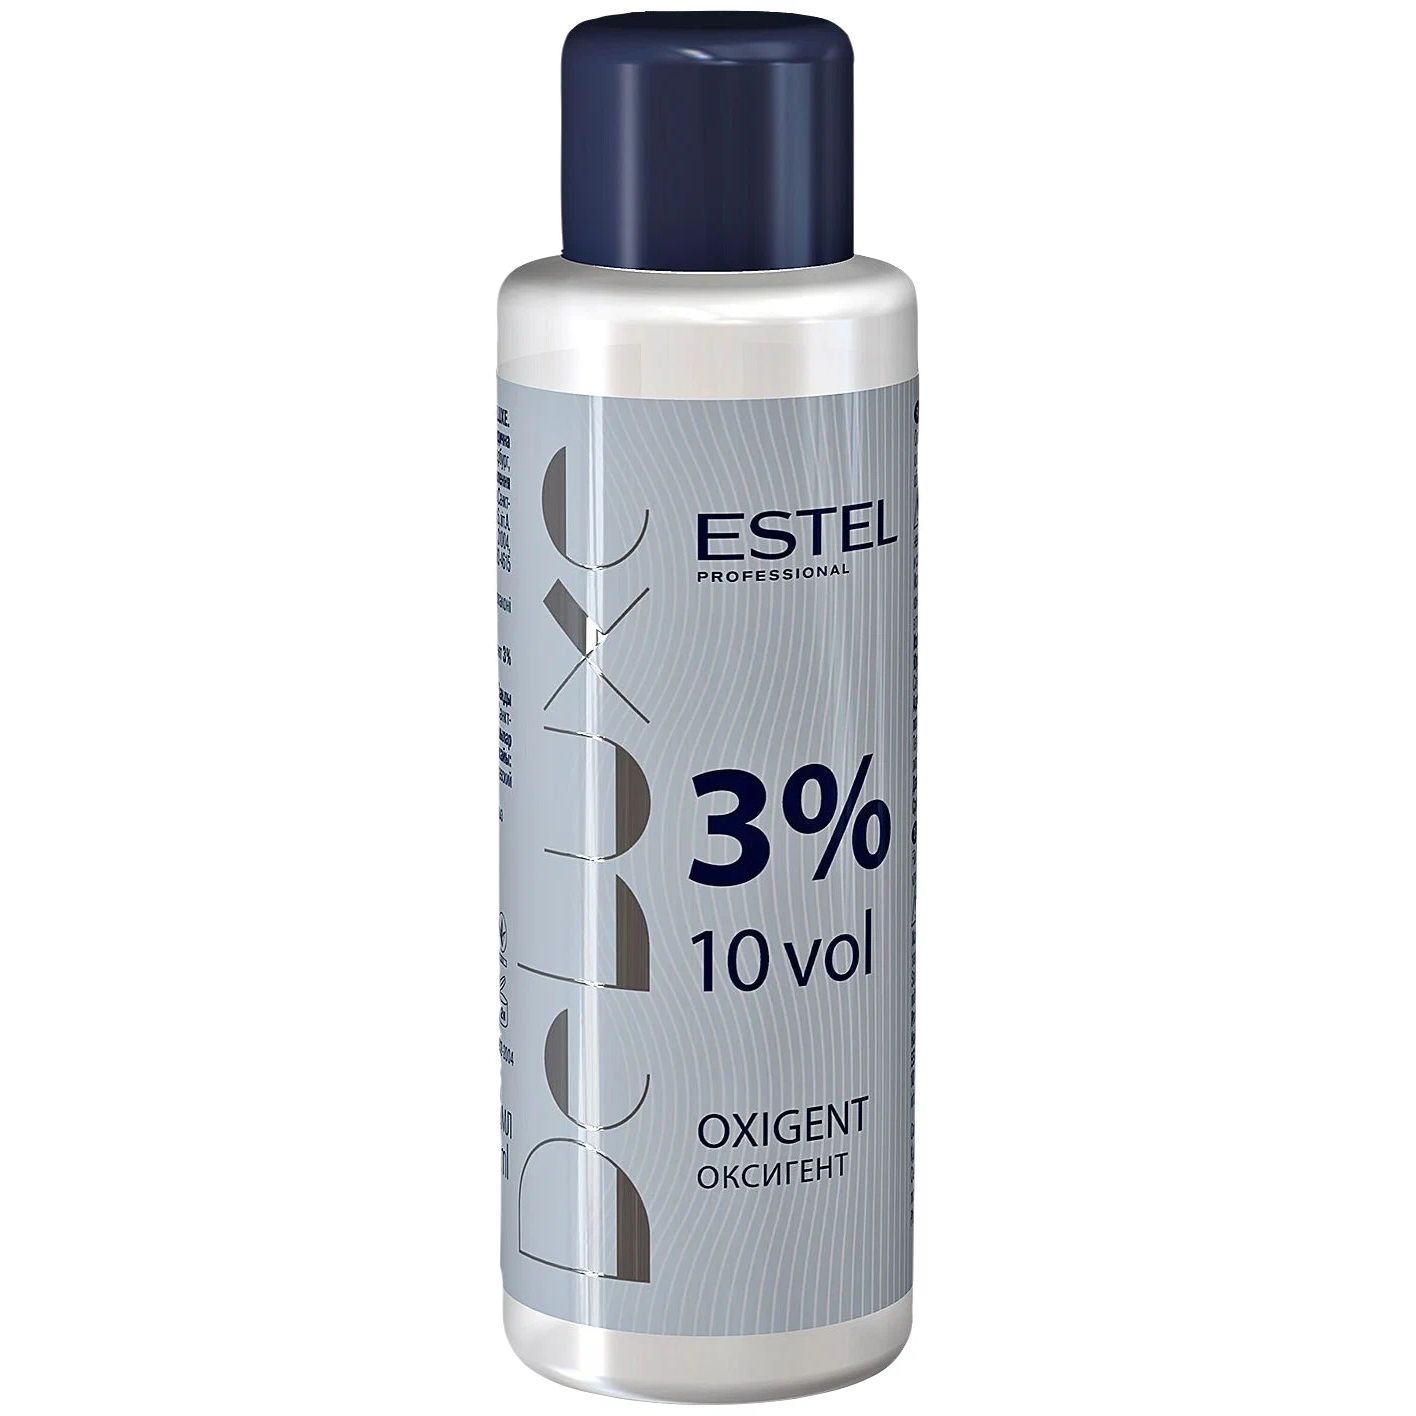 Проявитель Estel Professional De Luxe Oxigent 3% 60 мл проявитель estel professional stabilized oxidant 6% 500 мл